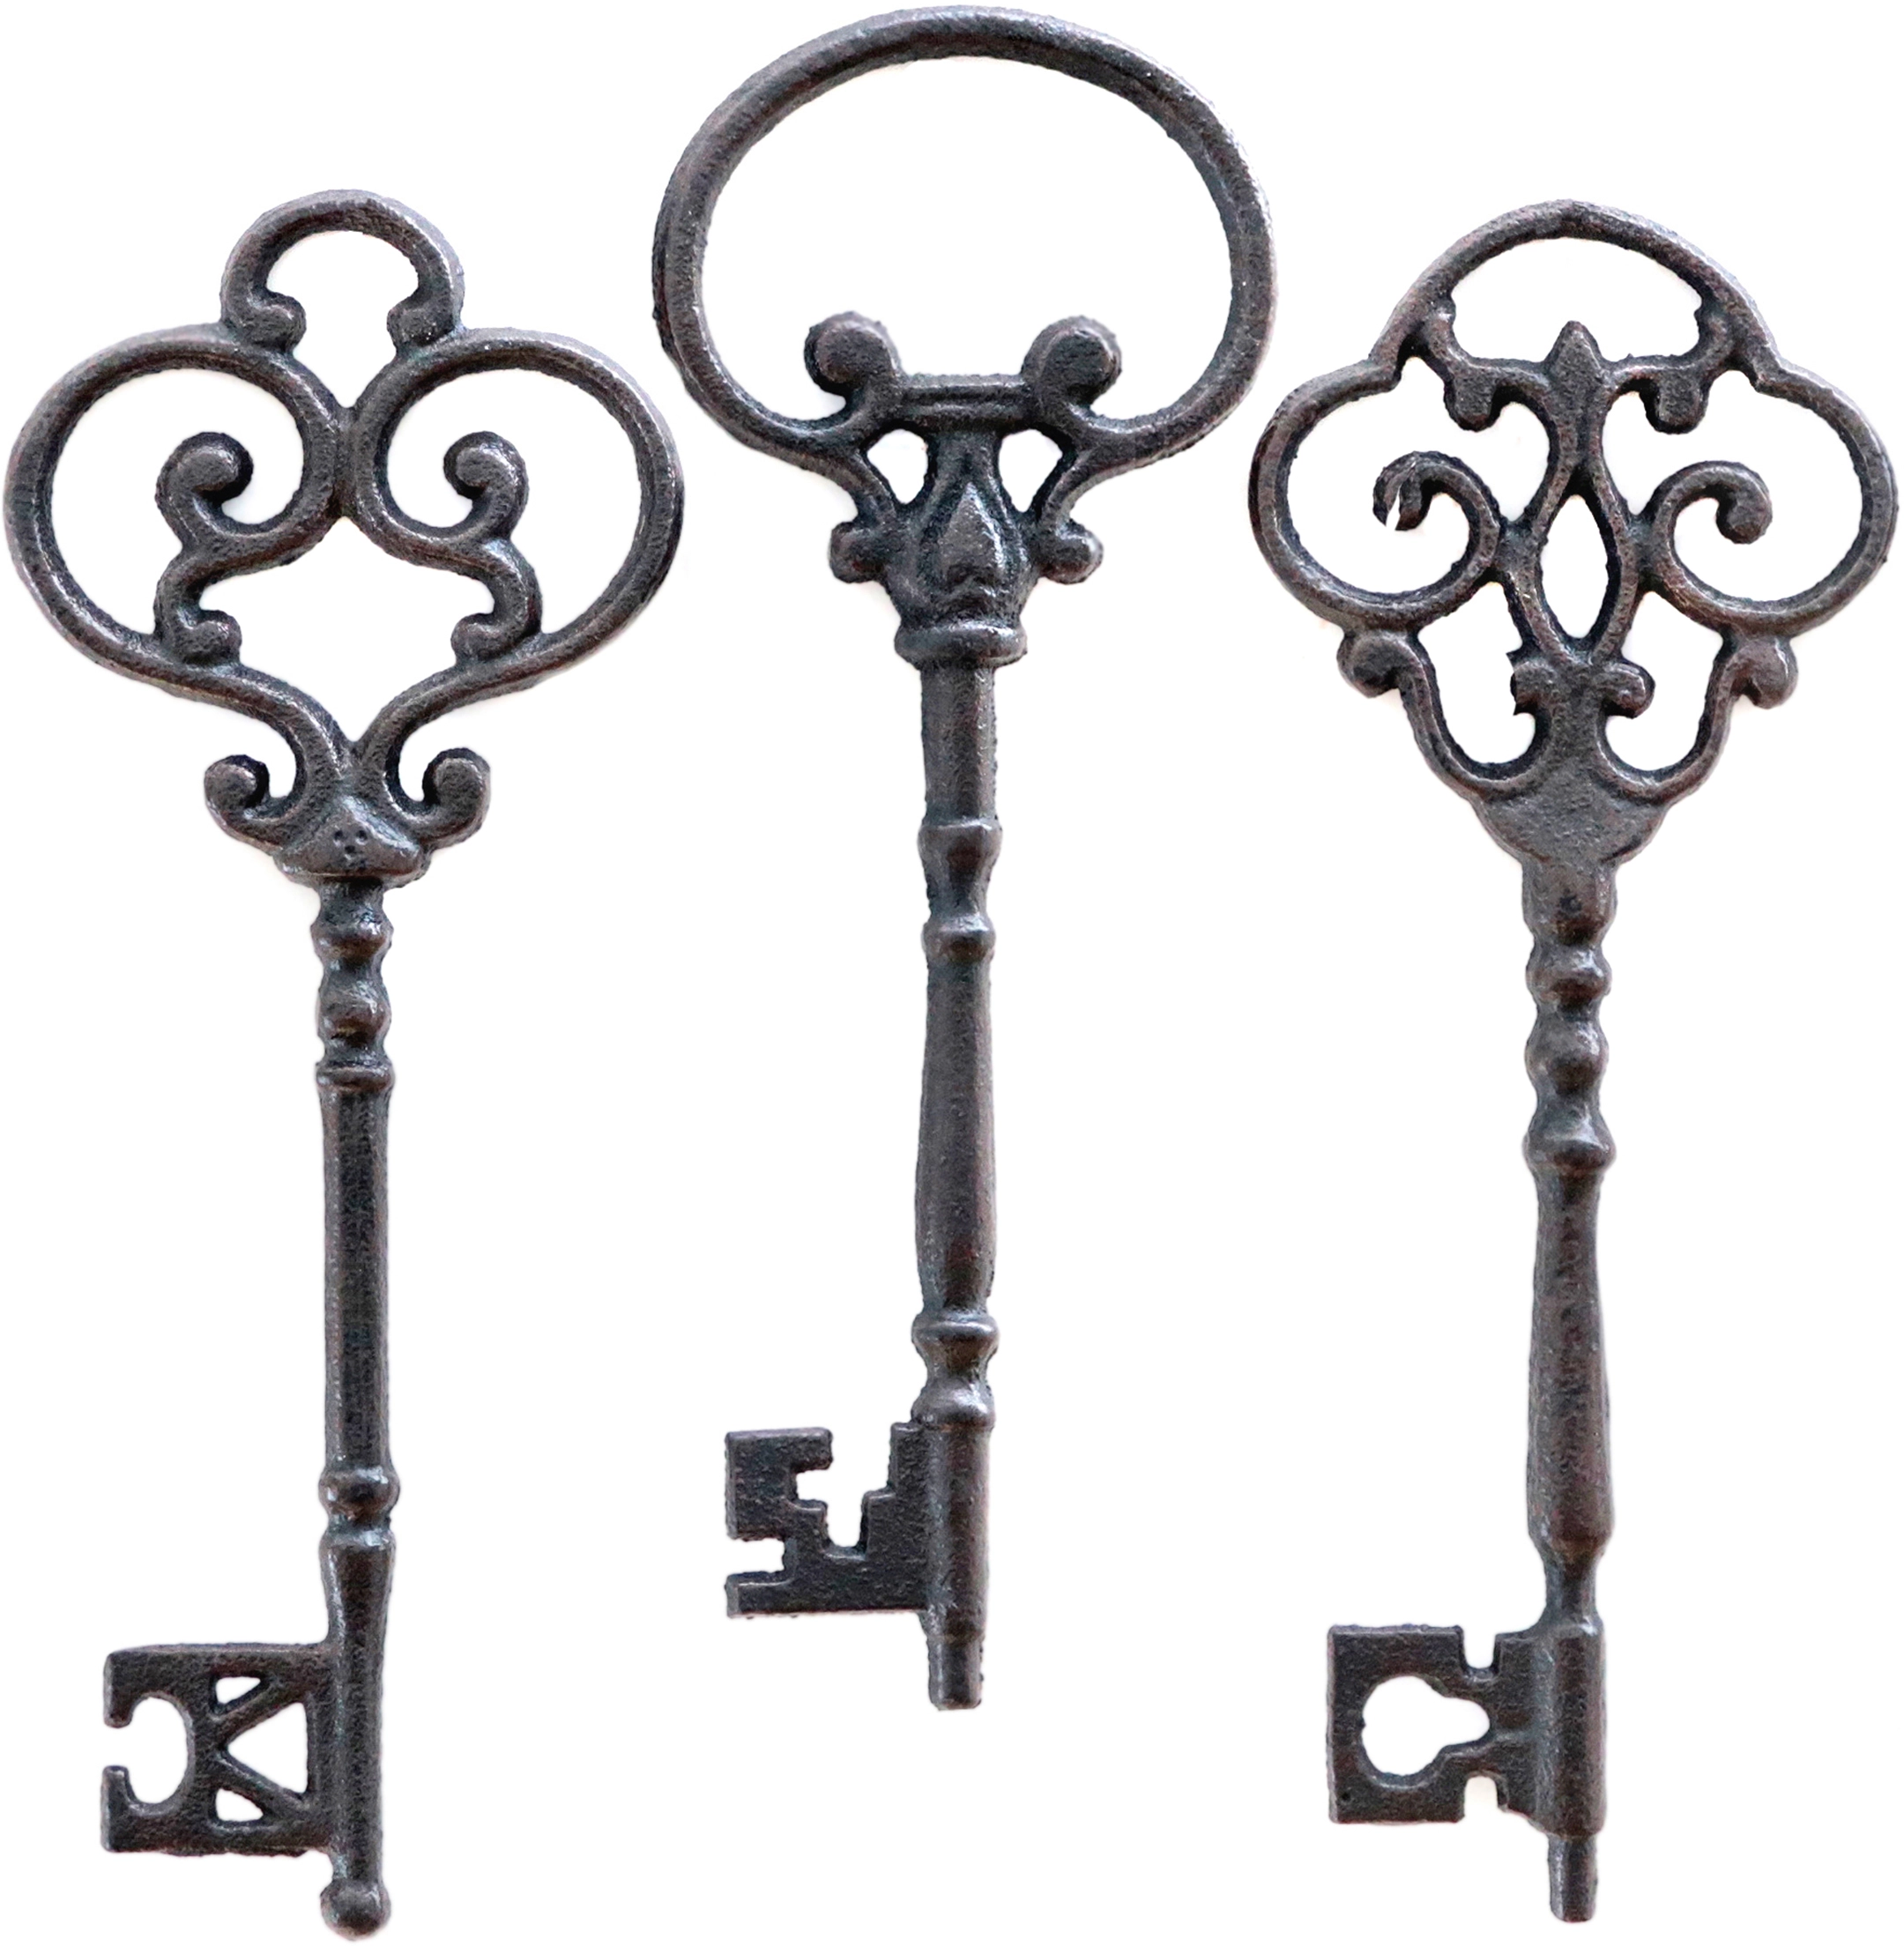 Großer Deko Schlüssel aus Gusseisen, verspielt, 25 cm